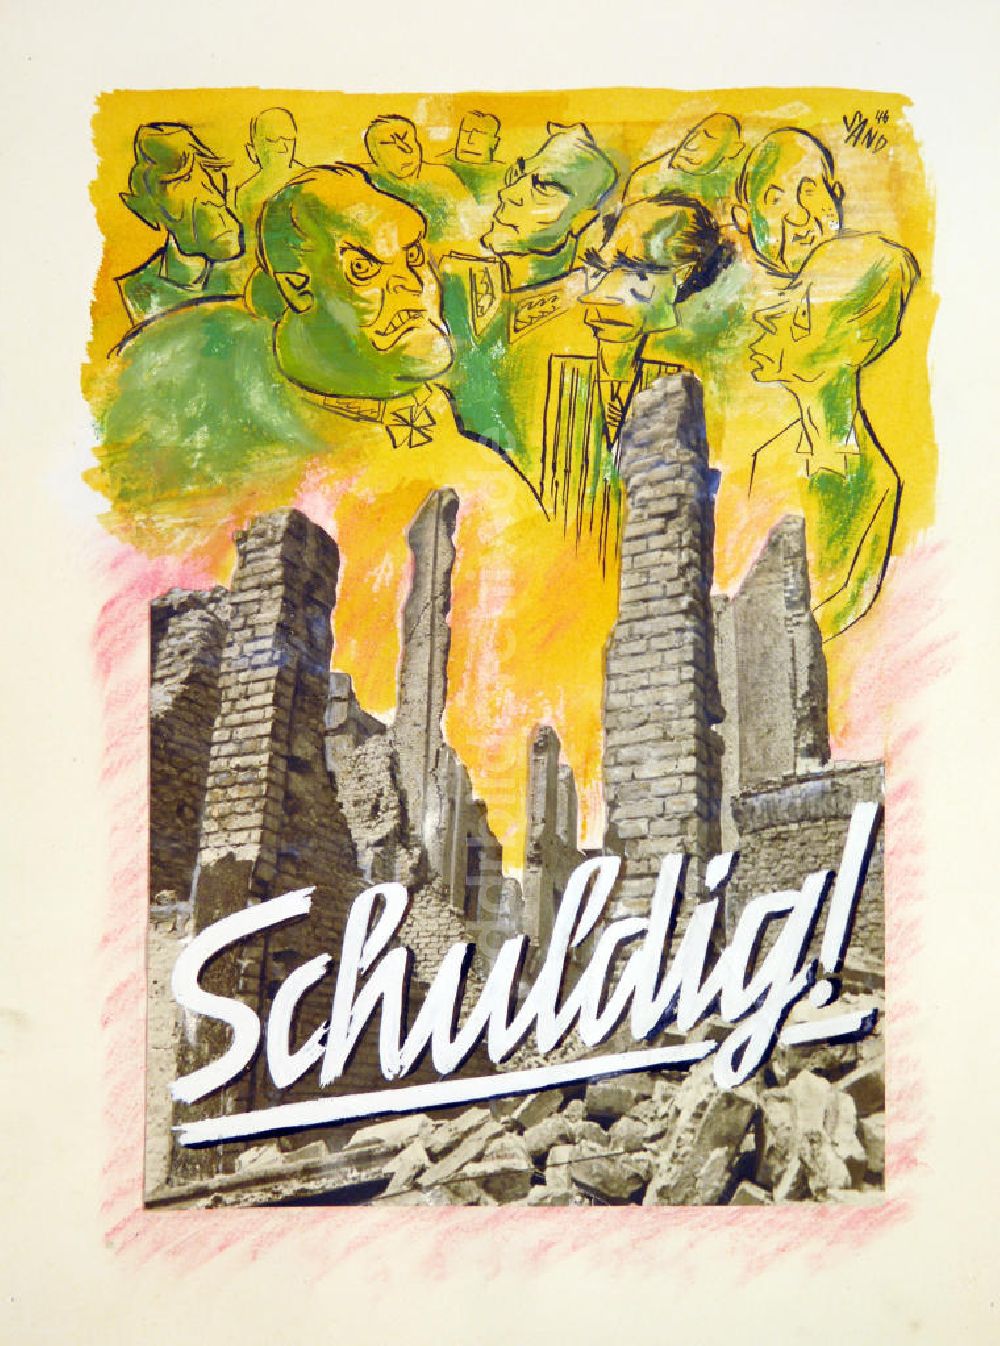 DDR-Bildarchiv: Berlin - Zeichnung von Herbert Sandberg Schuldig! aus dem Jahr 1946